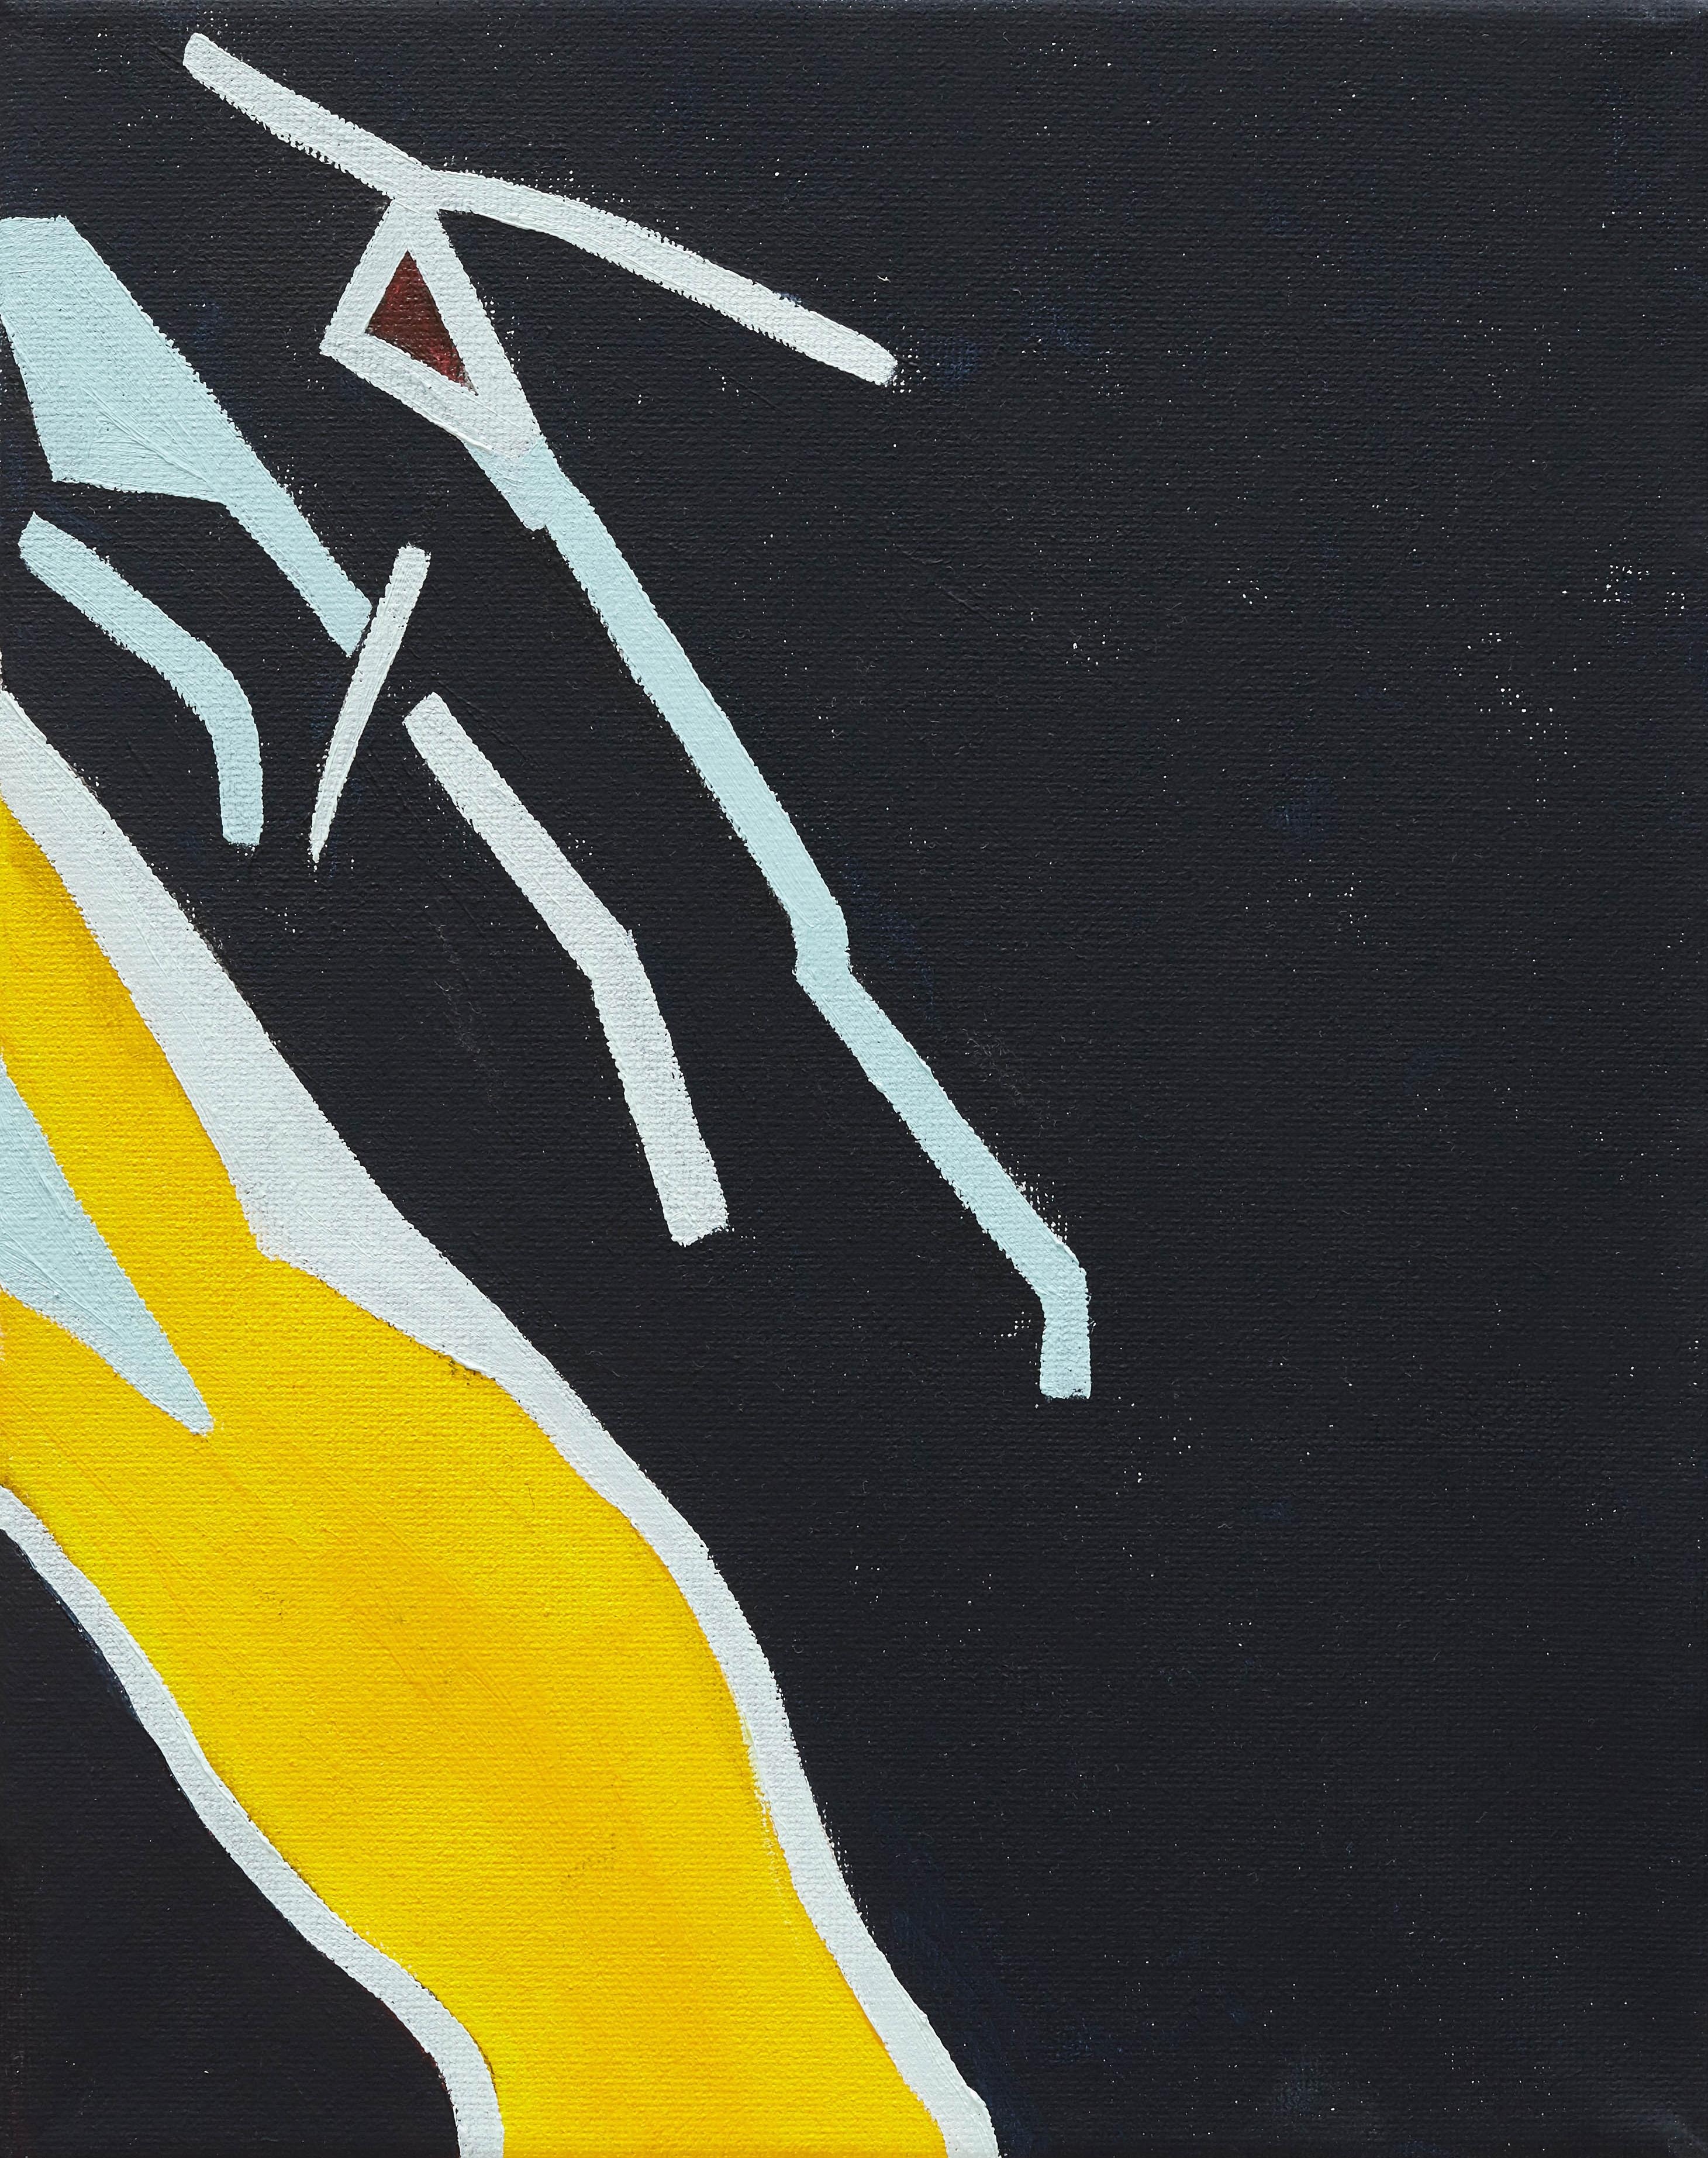 Mel Reese Abstract Painting – "Body Abstraction no. 14", zeitgenössische abstrakte Körperbemalung in Gelb und Marineblau